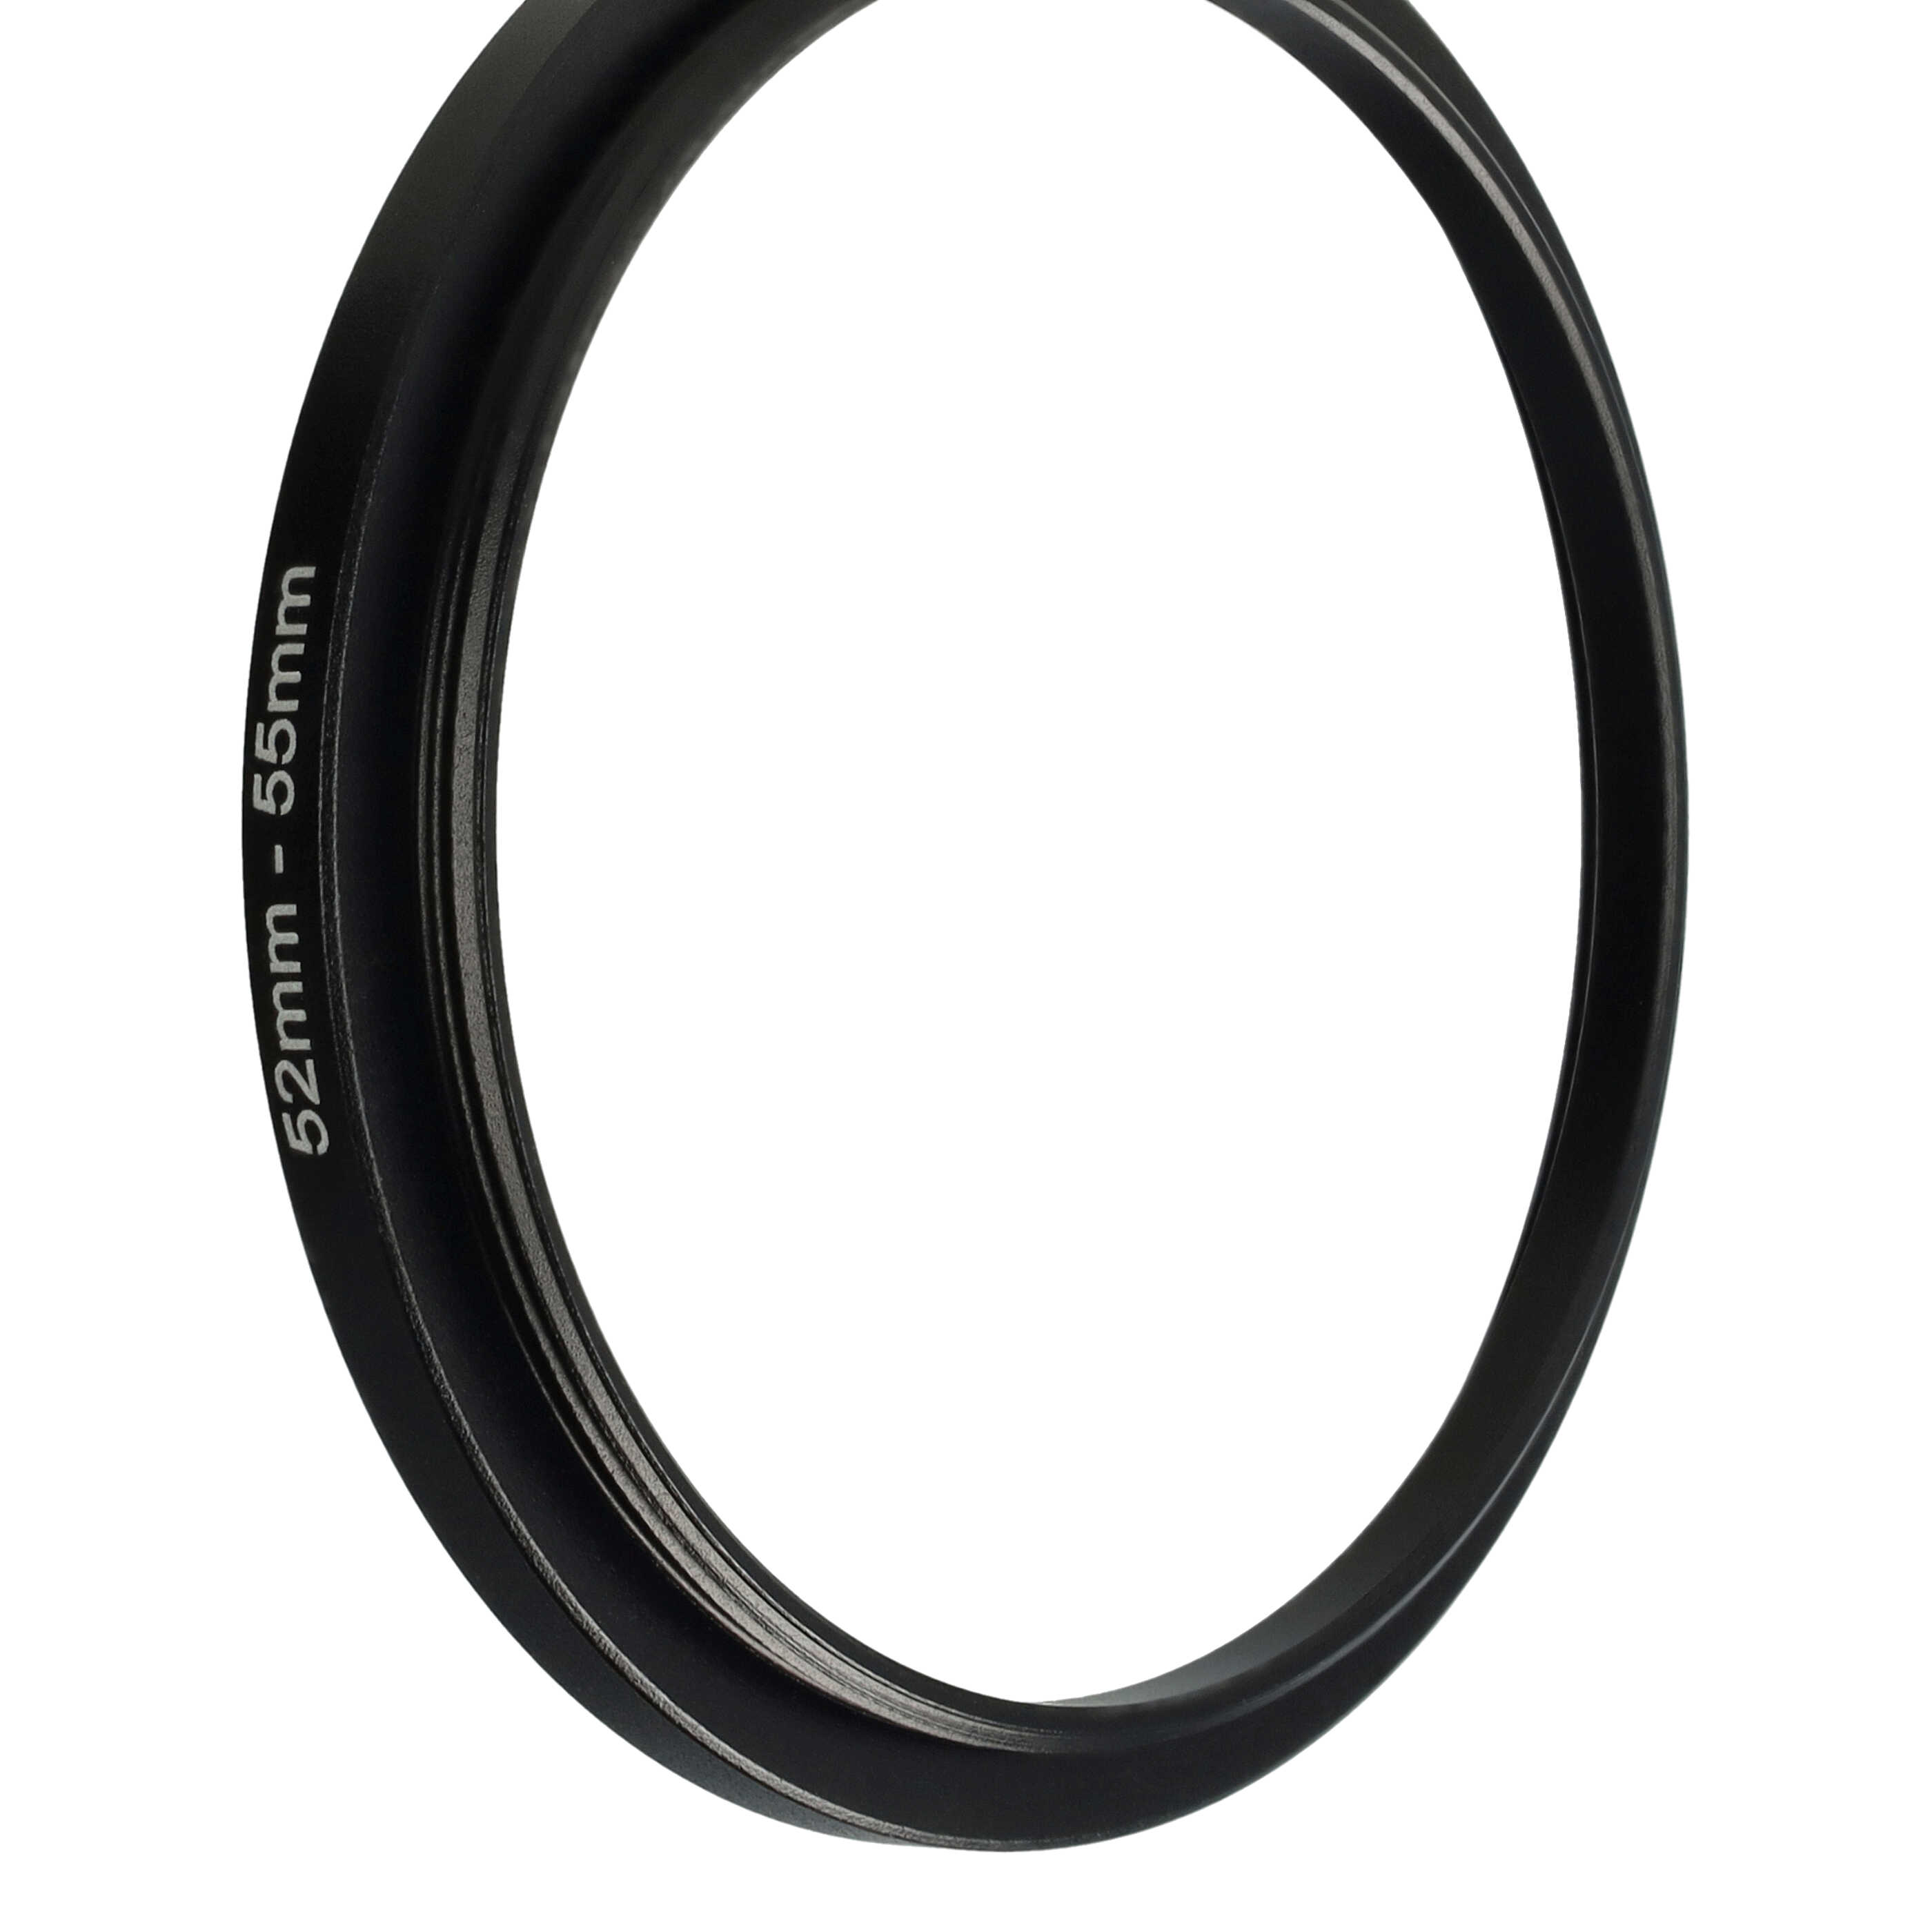 Step-Up-Ring Adapter 52 mm auf 55 mm passend für diverse Kamera-Objektive - Filteradapter